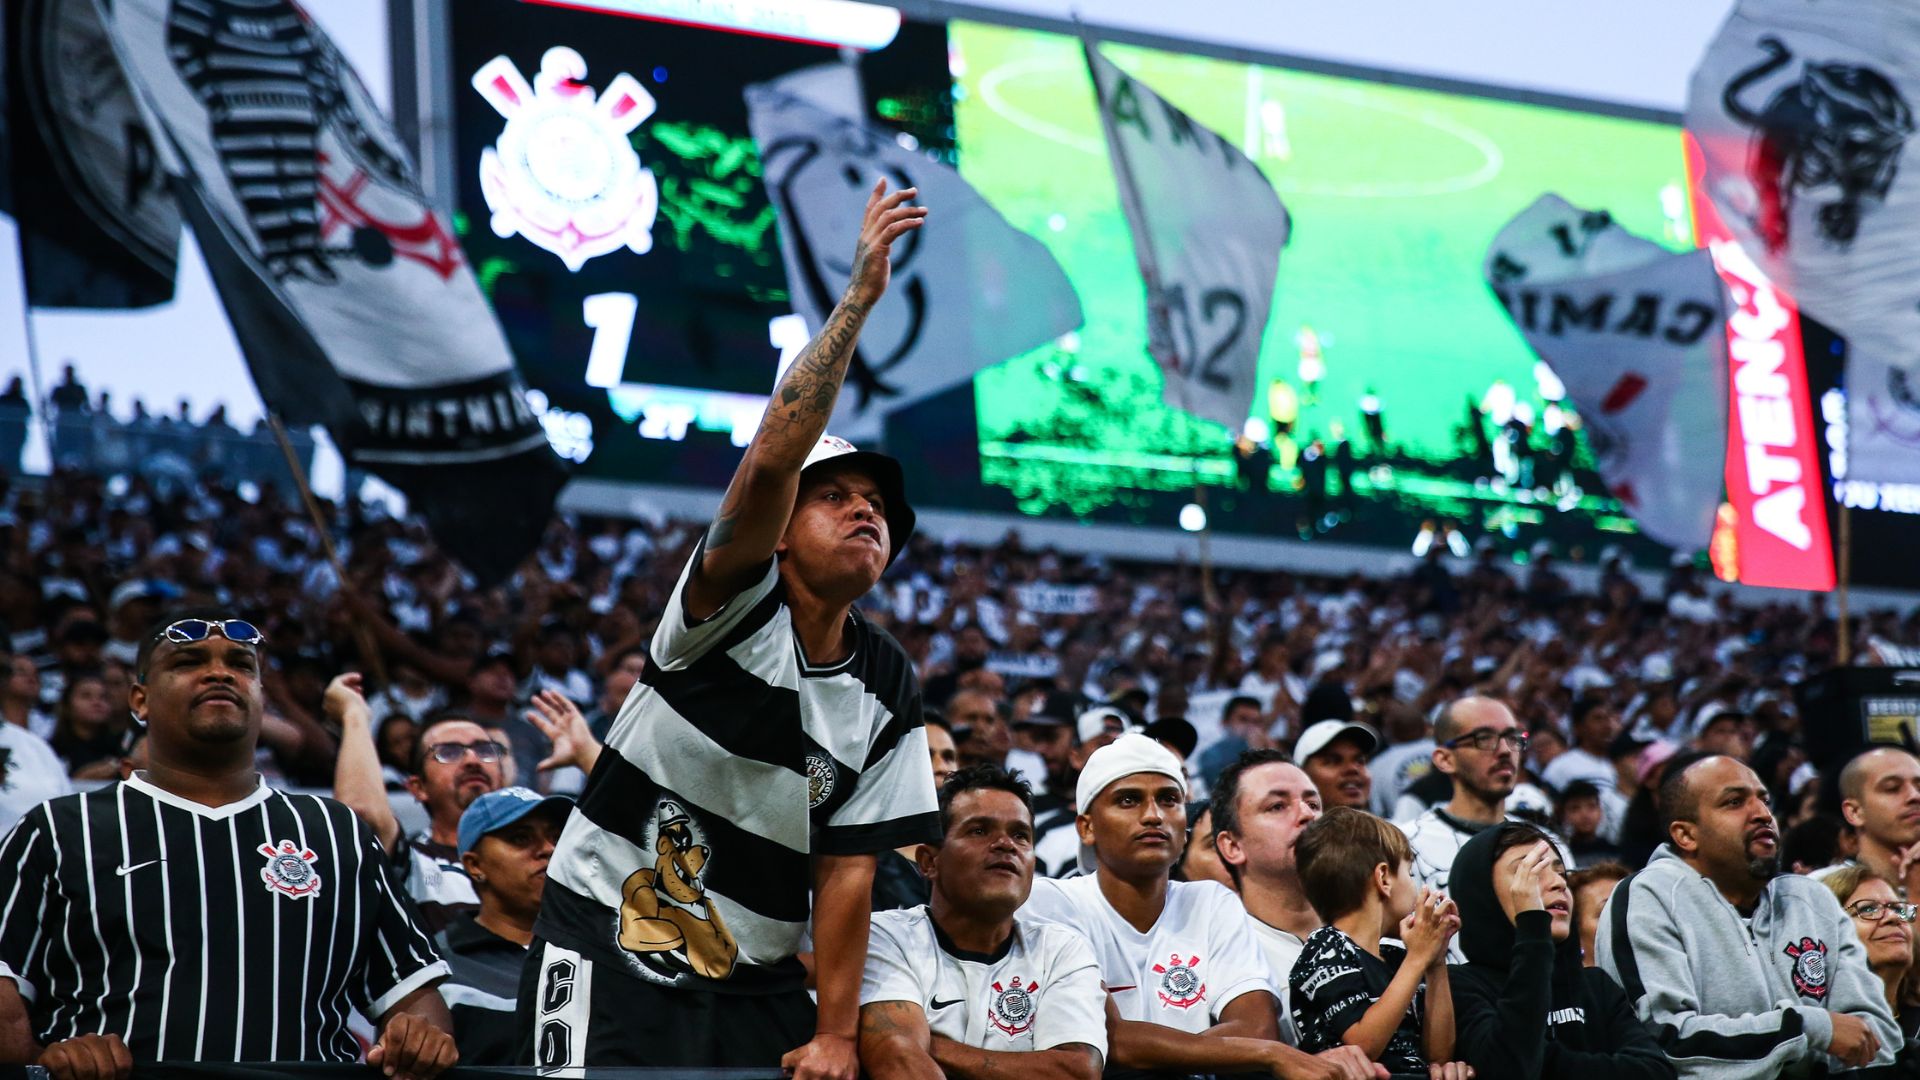 Imagens da torcida do Corinthians durante o jogo contra o São Paulo (Crédito: Getty Images)